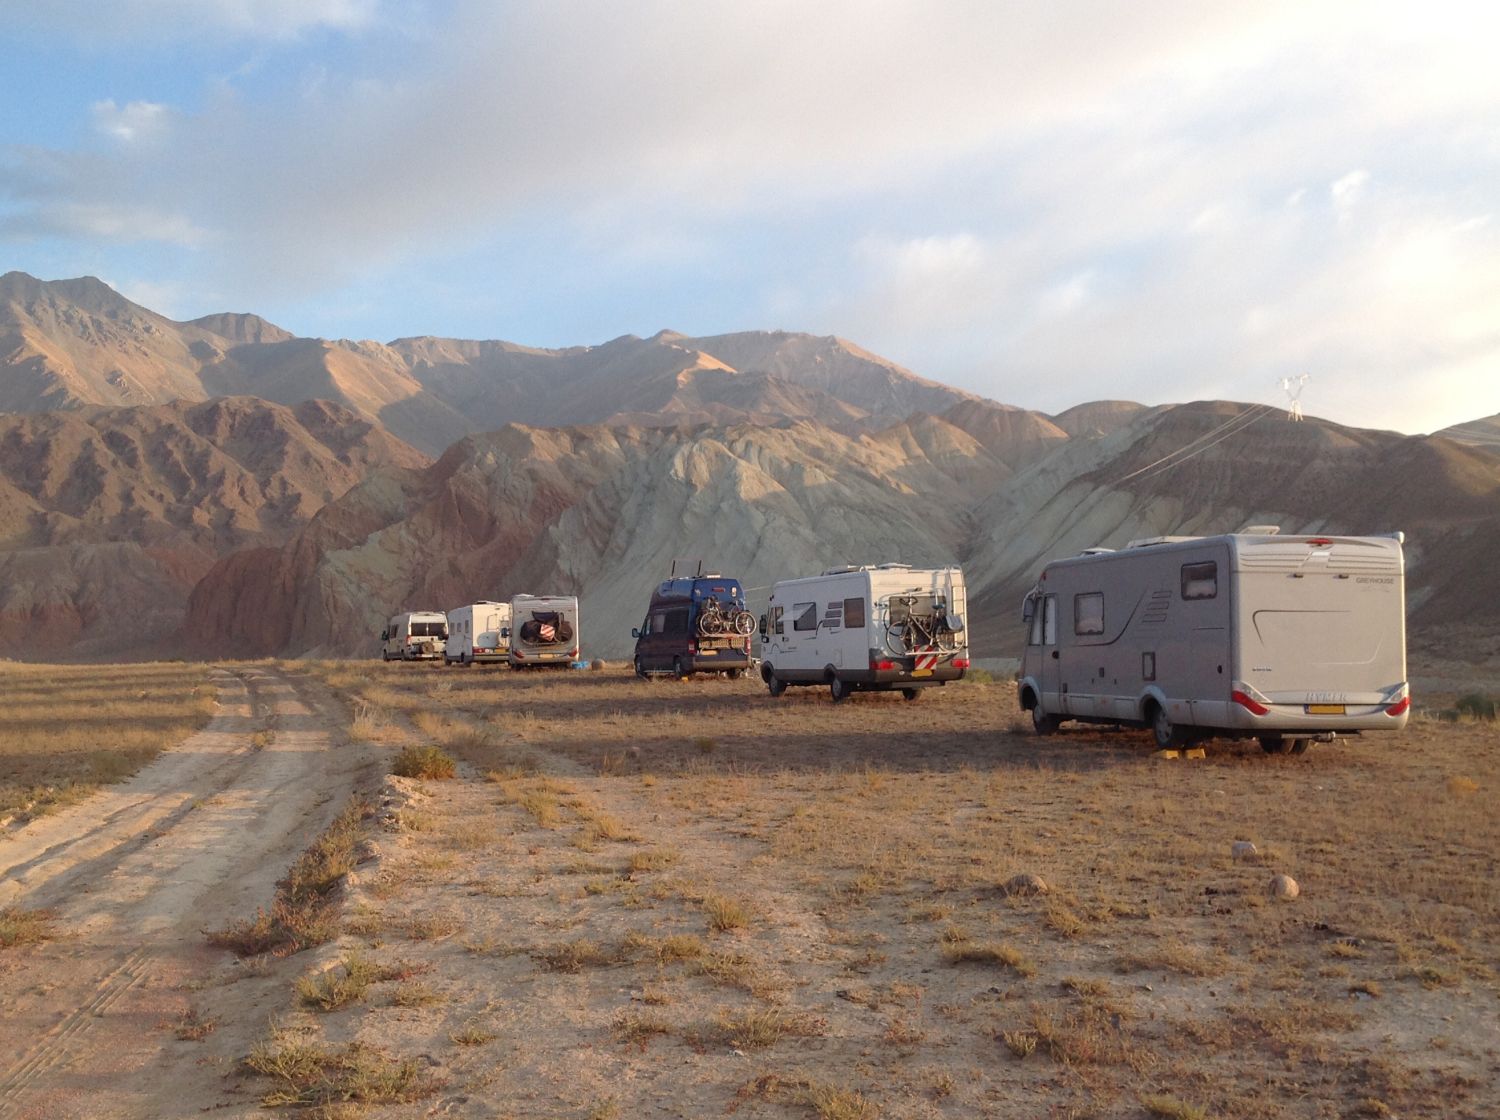 Kirgyzie overland zijderoute met eigen camper | Tailor Made Expeditions